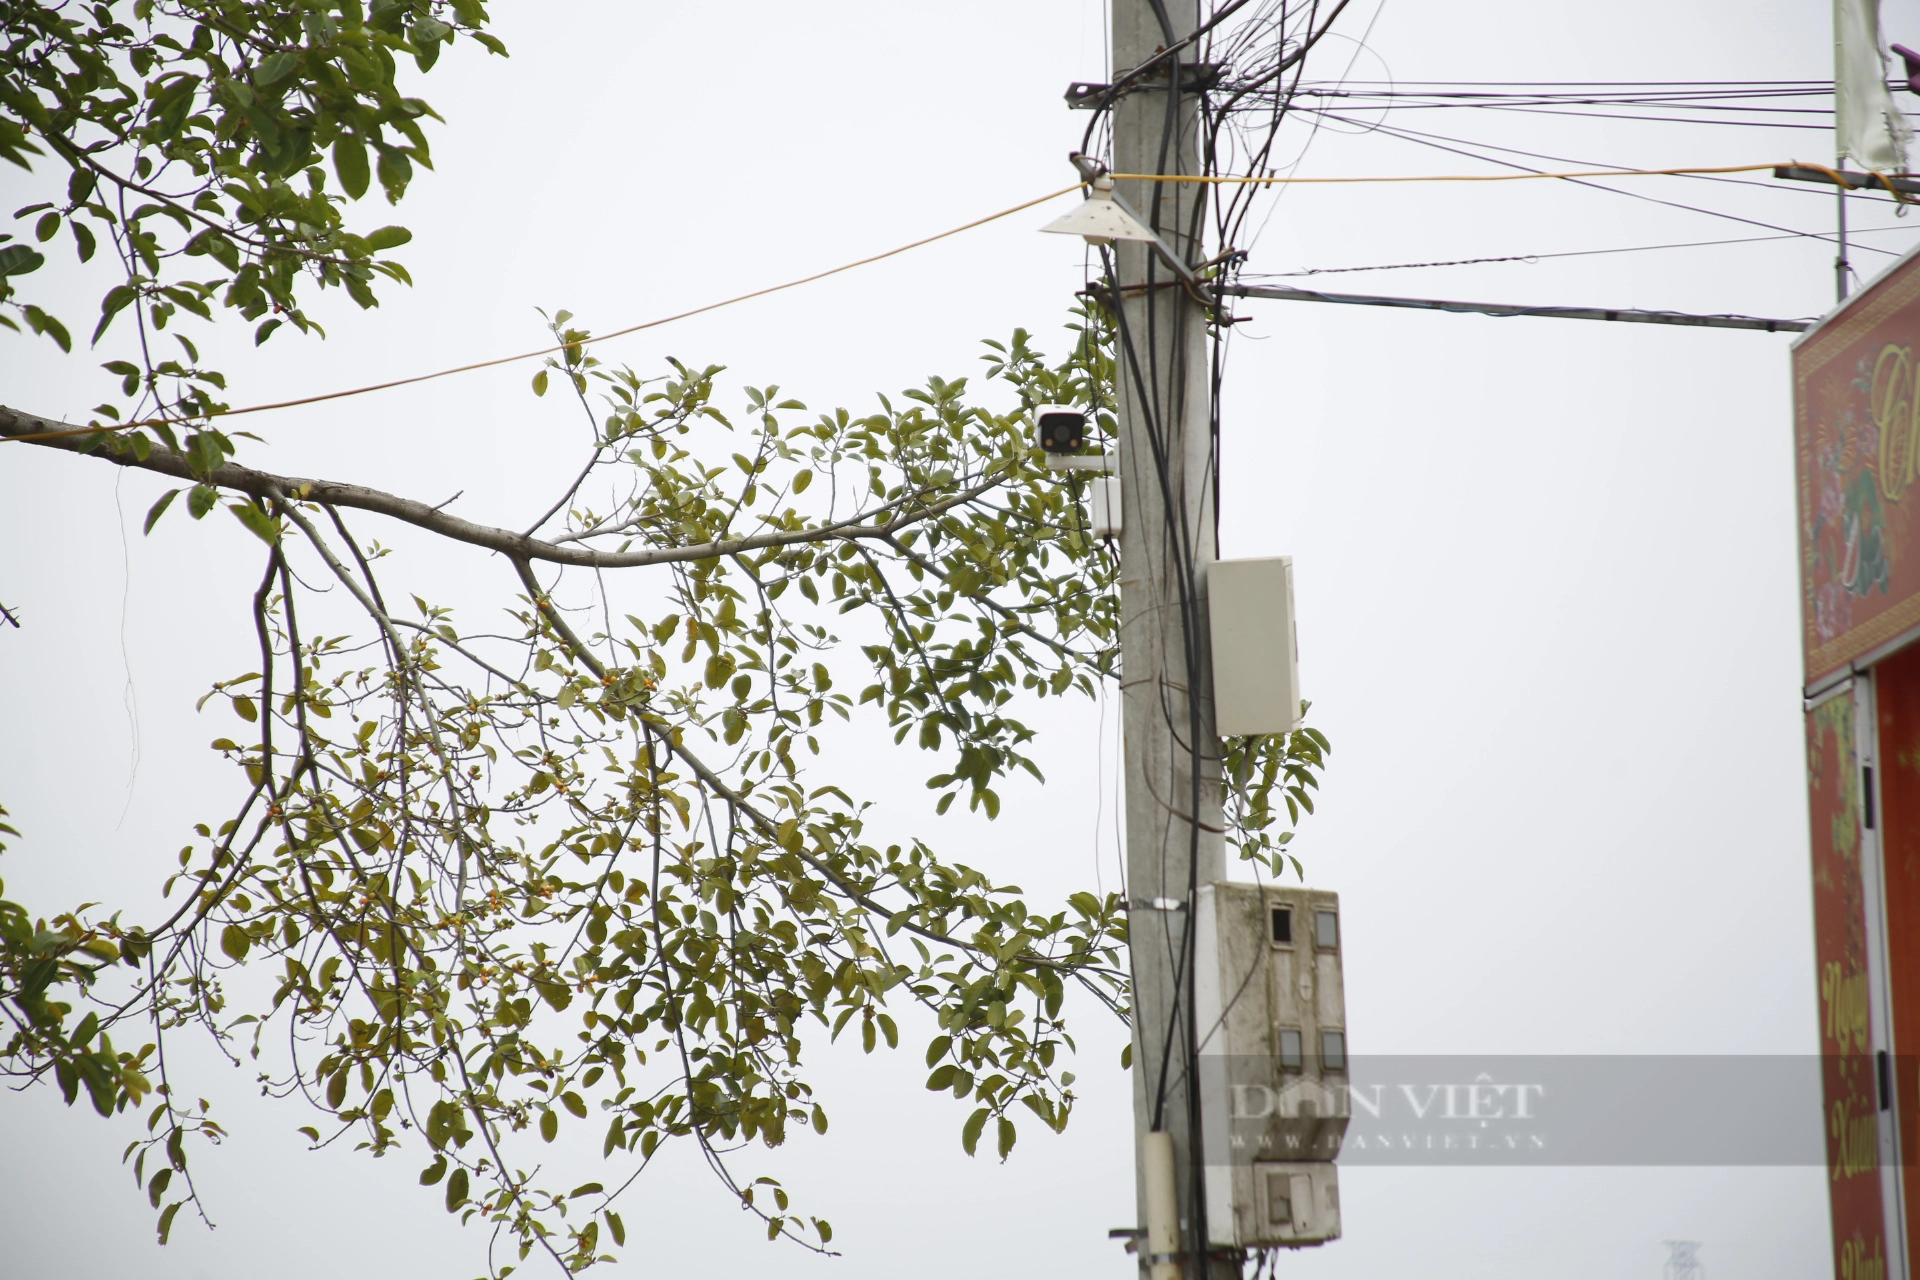 Hàng nghìn camera được lắp đặt, đảm bảo an ninh ở huyện ngoại thành Hà Nội - Ảnh 2.